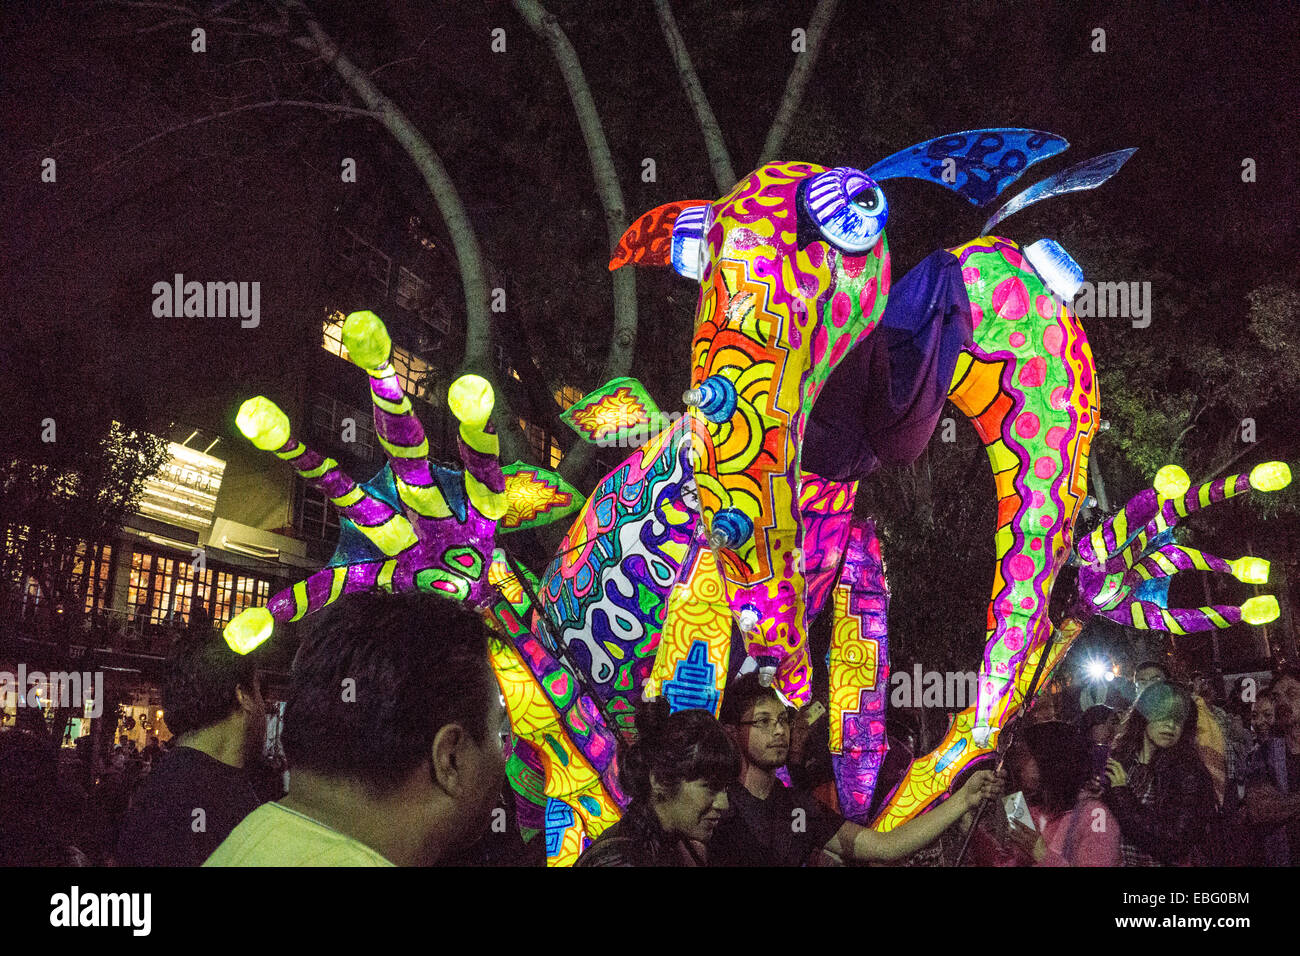 Ciudad de México, México, 29 de noviembre, 2014: monstruos iluminada del desfile de Alebrijes monumentales, criaturas fantásticas, llegar a la Plaza Luis Cabrera para juzgar después de desfilar por las calles de noche de la Orizaba & Roma neigborhoods Crédito: Dorothy Alexander/Alamy Live News Foto de stock